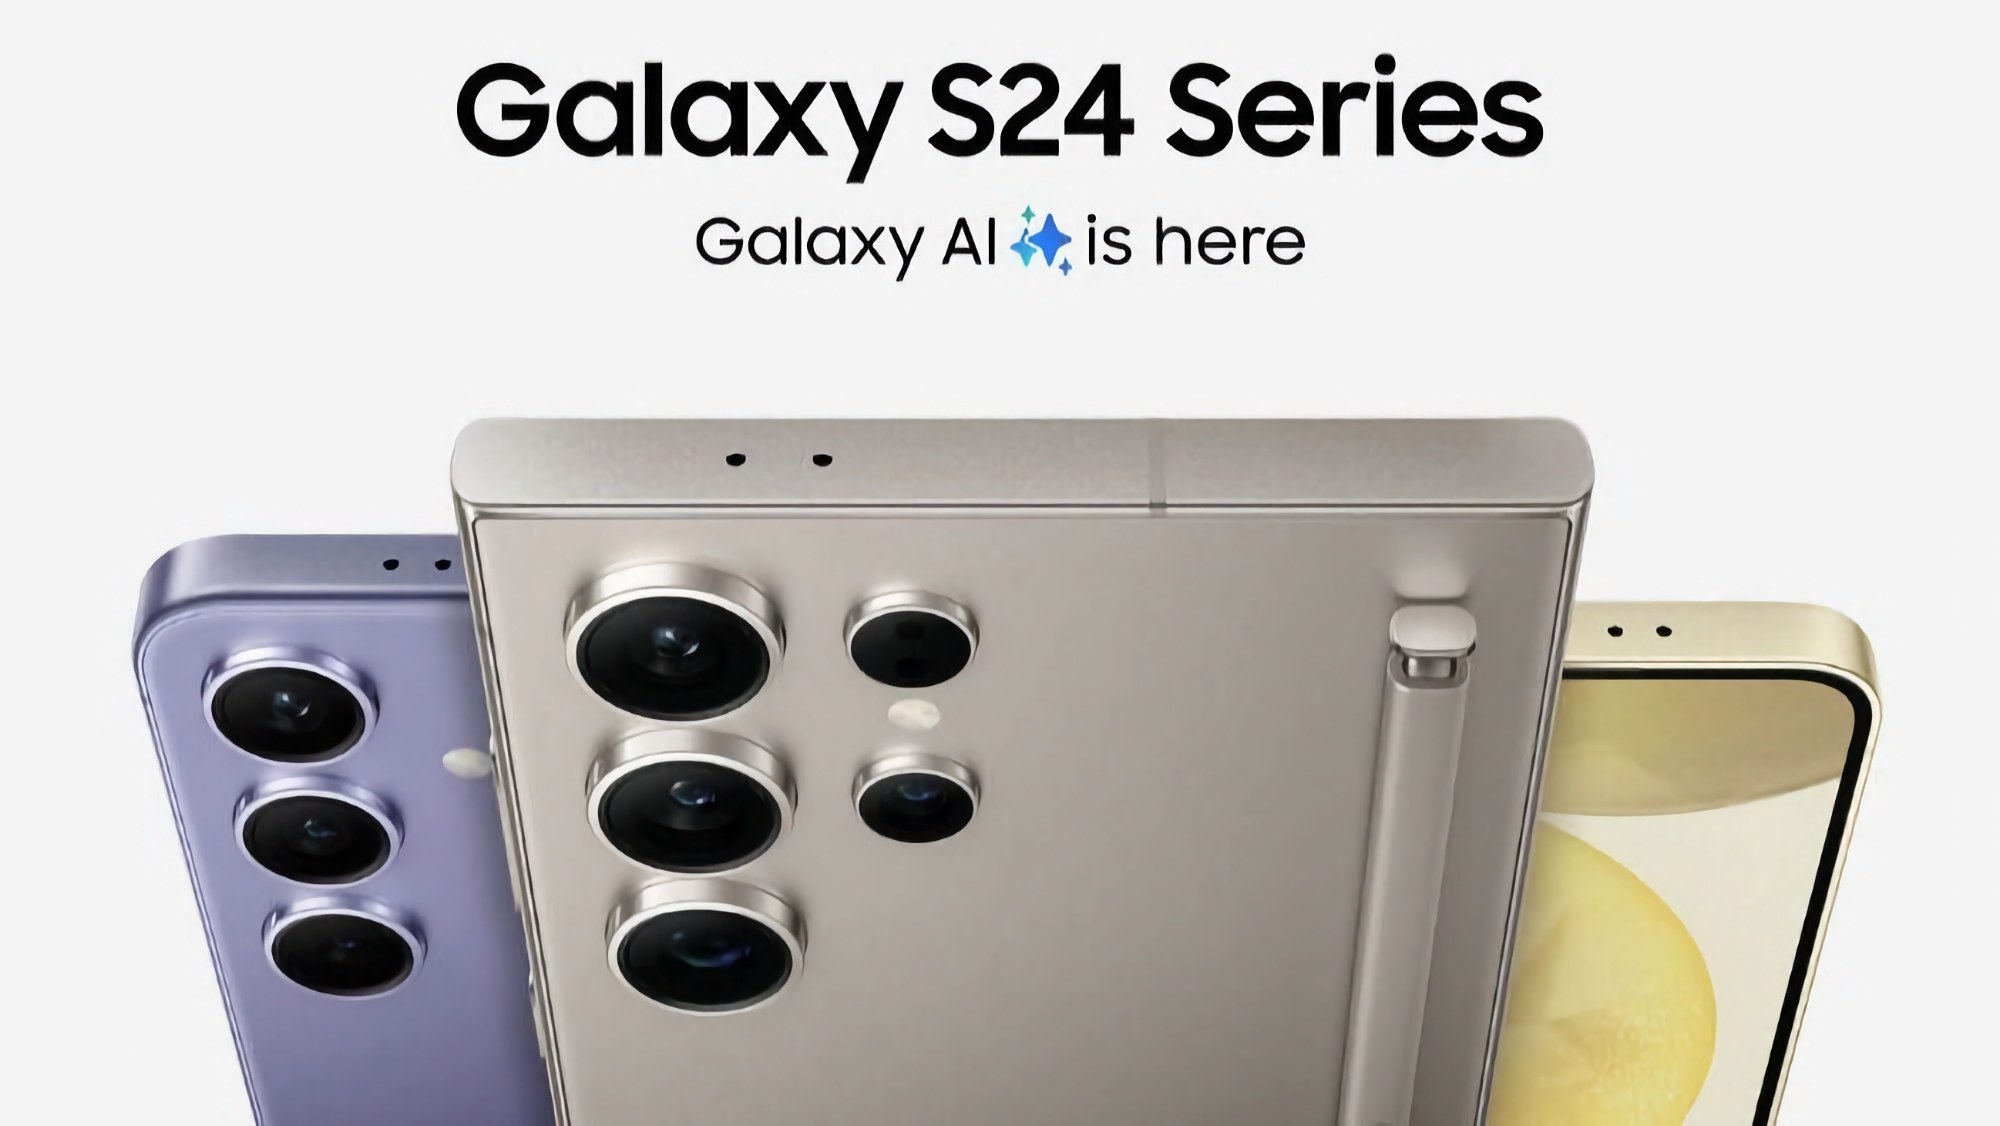 Les Samsung Galaxy S24, Galaxy S24+ et Galaxy S24 Ultra sont d'ores et déjà disponibles en pré-commande sur Amazon, avec une carte eGift offrant une réduction allant jusqu'à 200 dollars